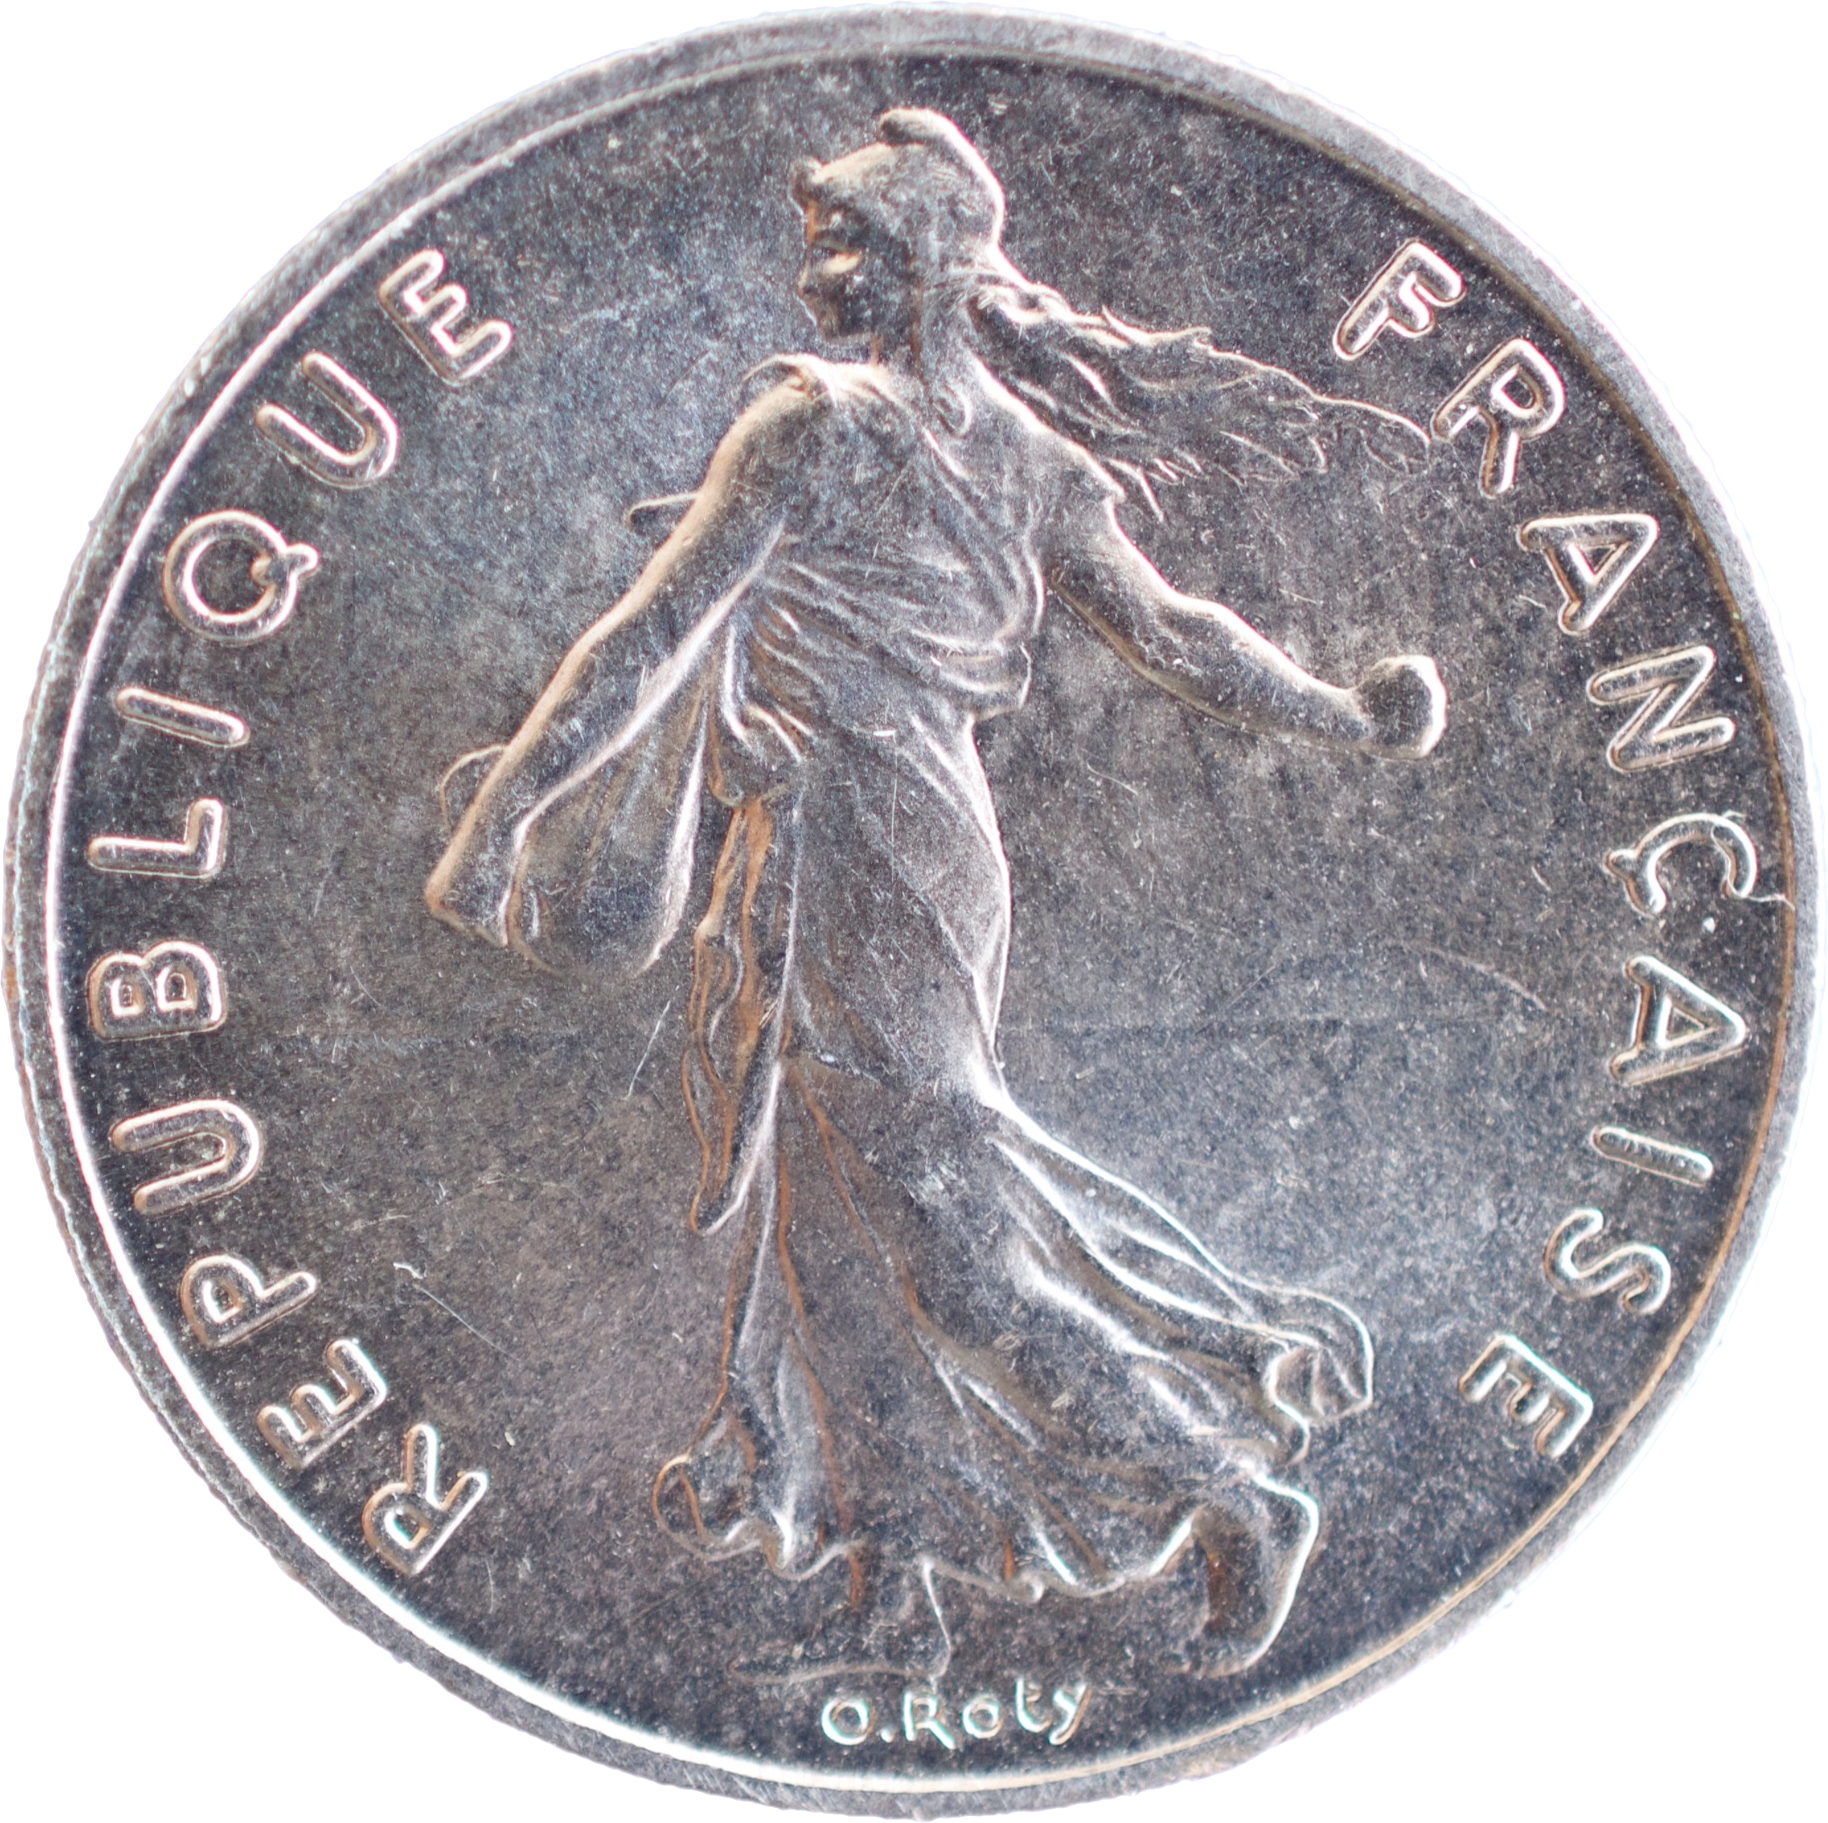 1/2 franc 2000 FDC droit